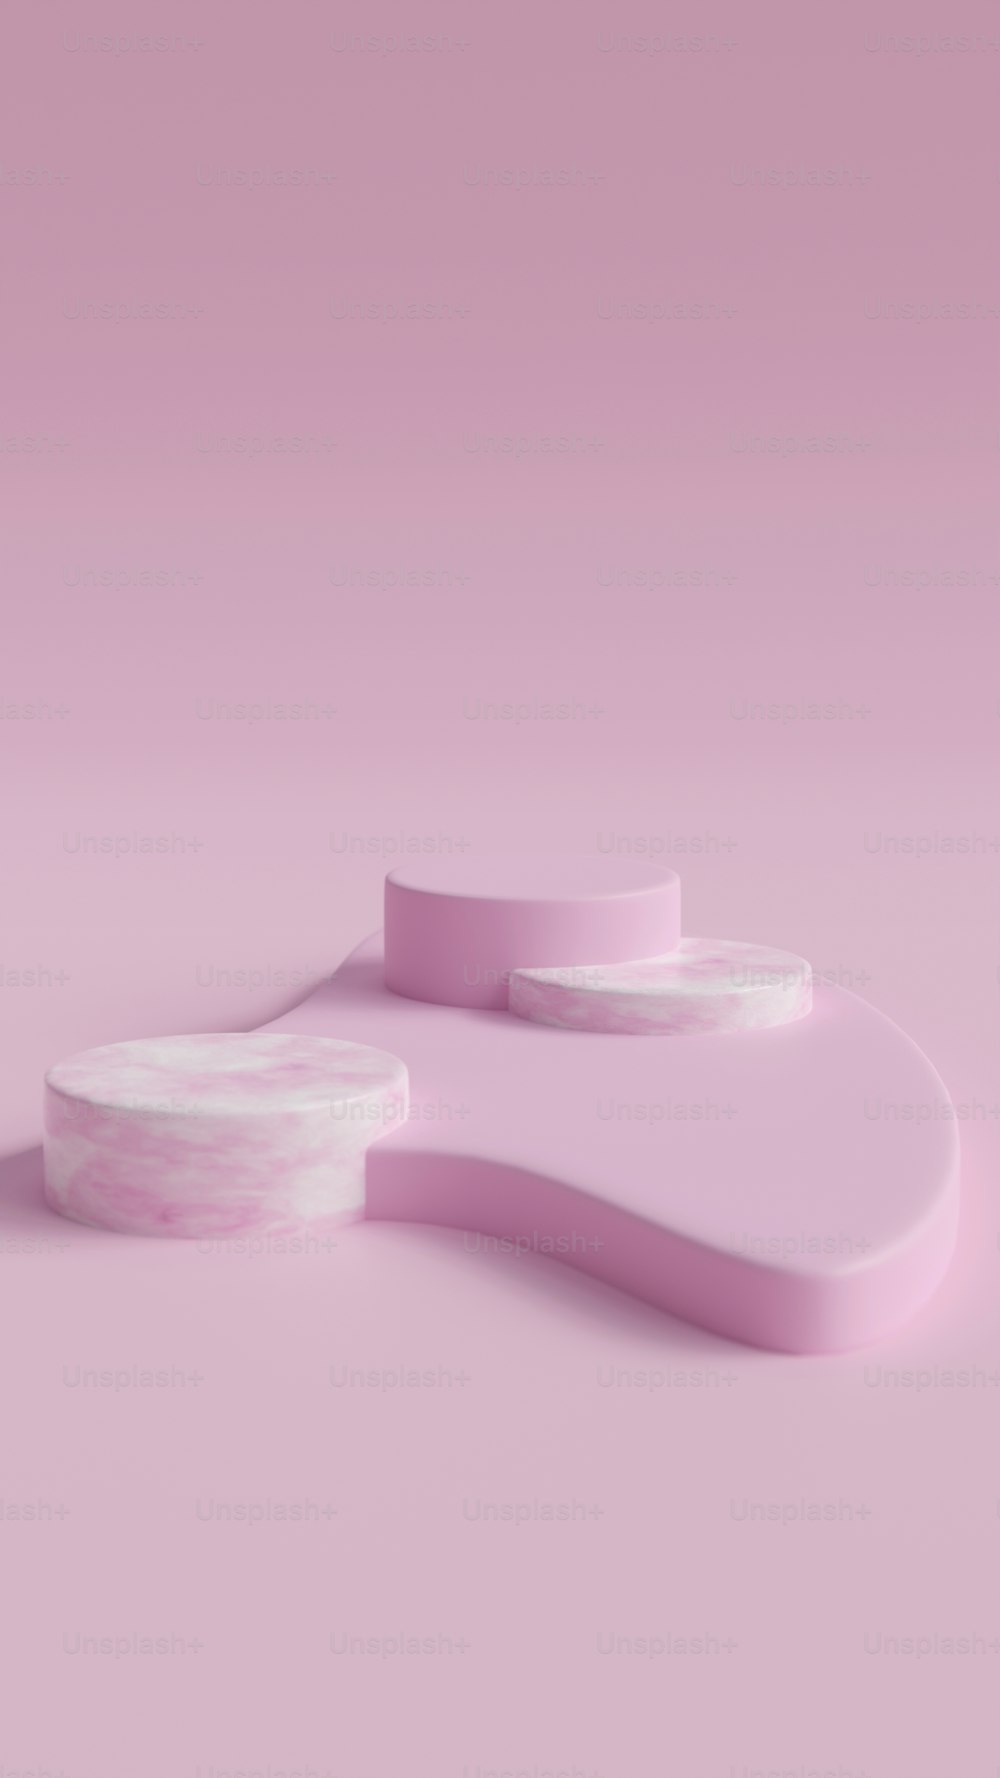 un oggetto rosa e bianco su uno sfondo rosa